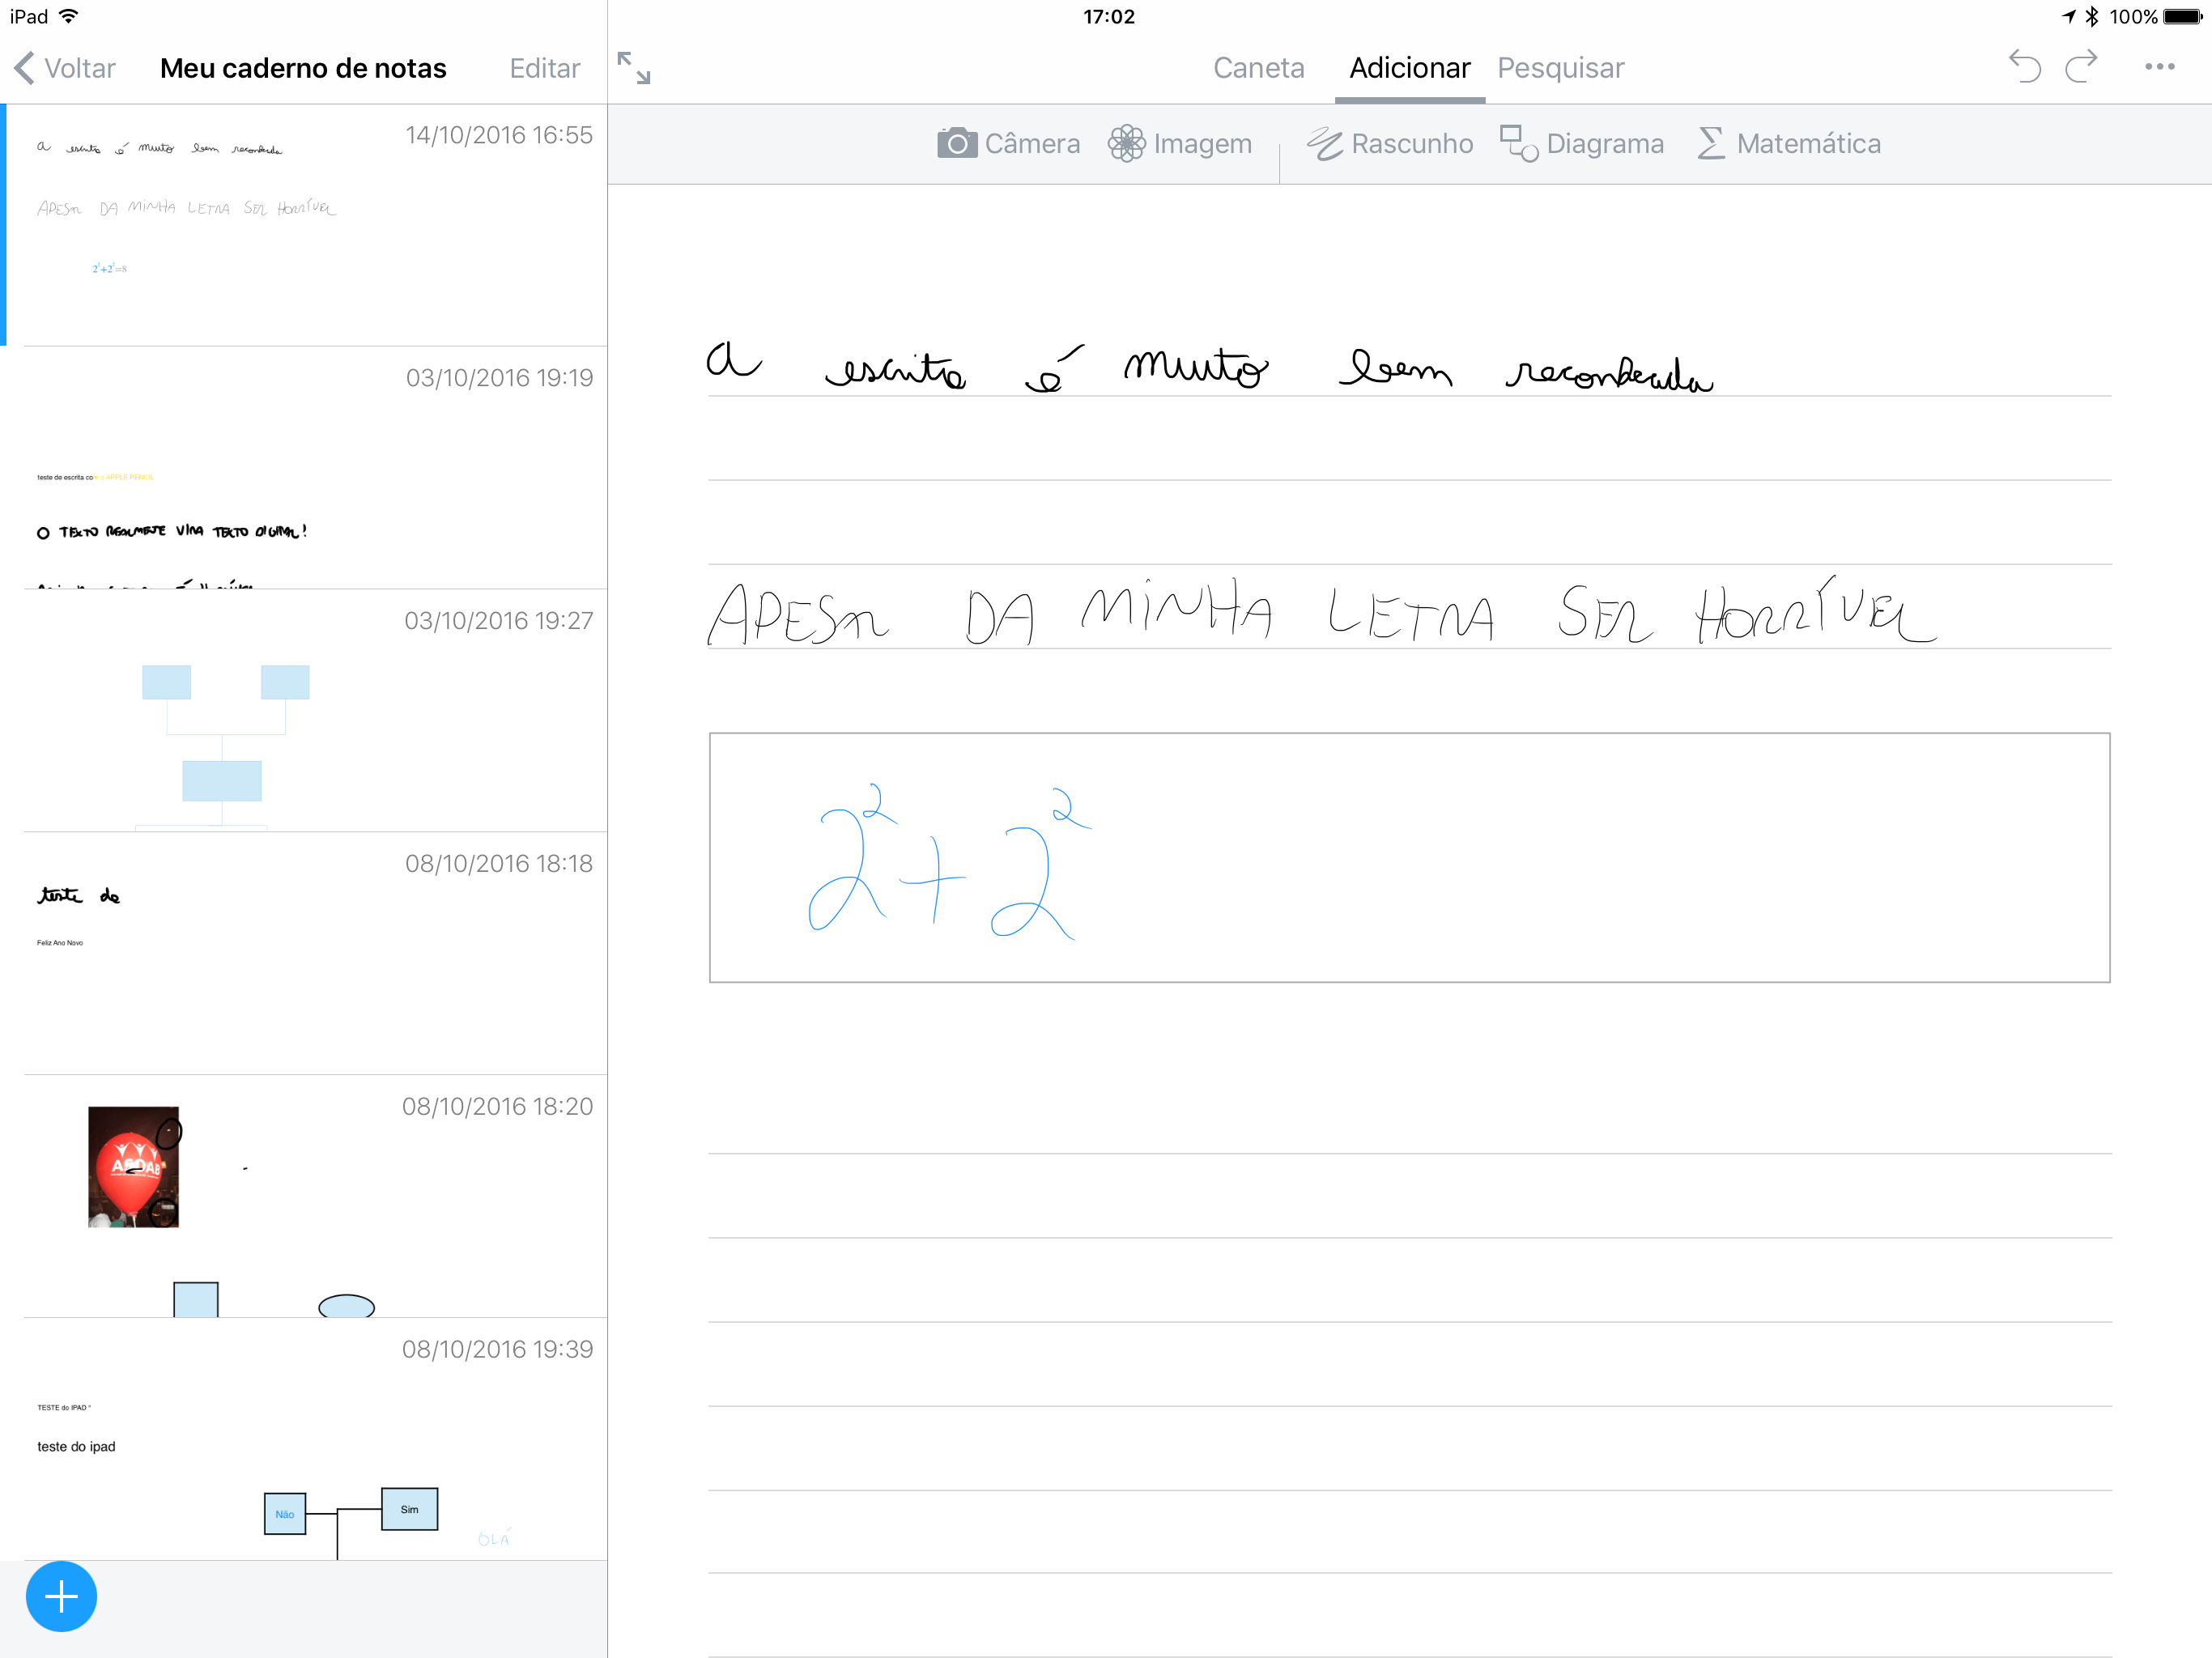 Equações matemáticas no app Nebo para iOS (iPads)